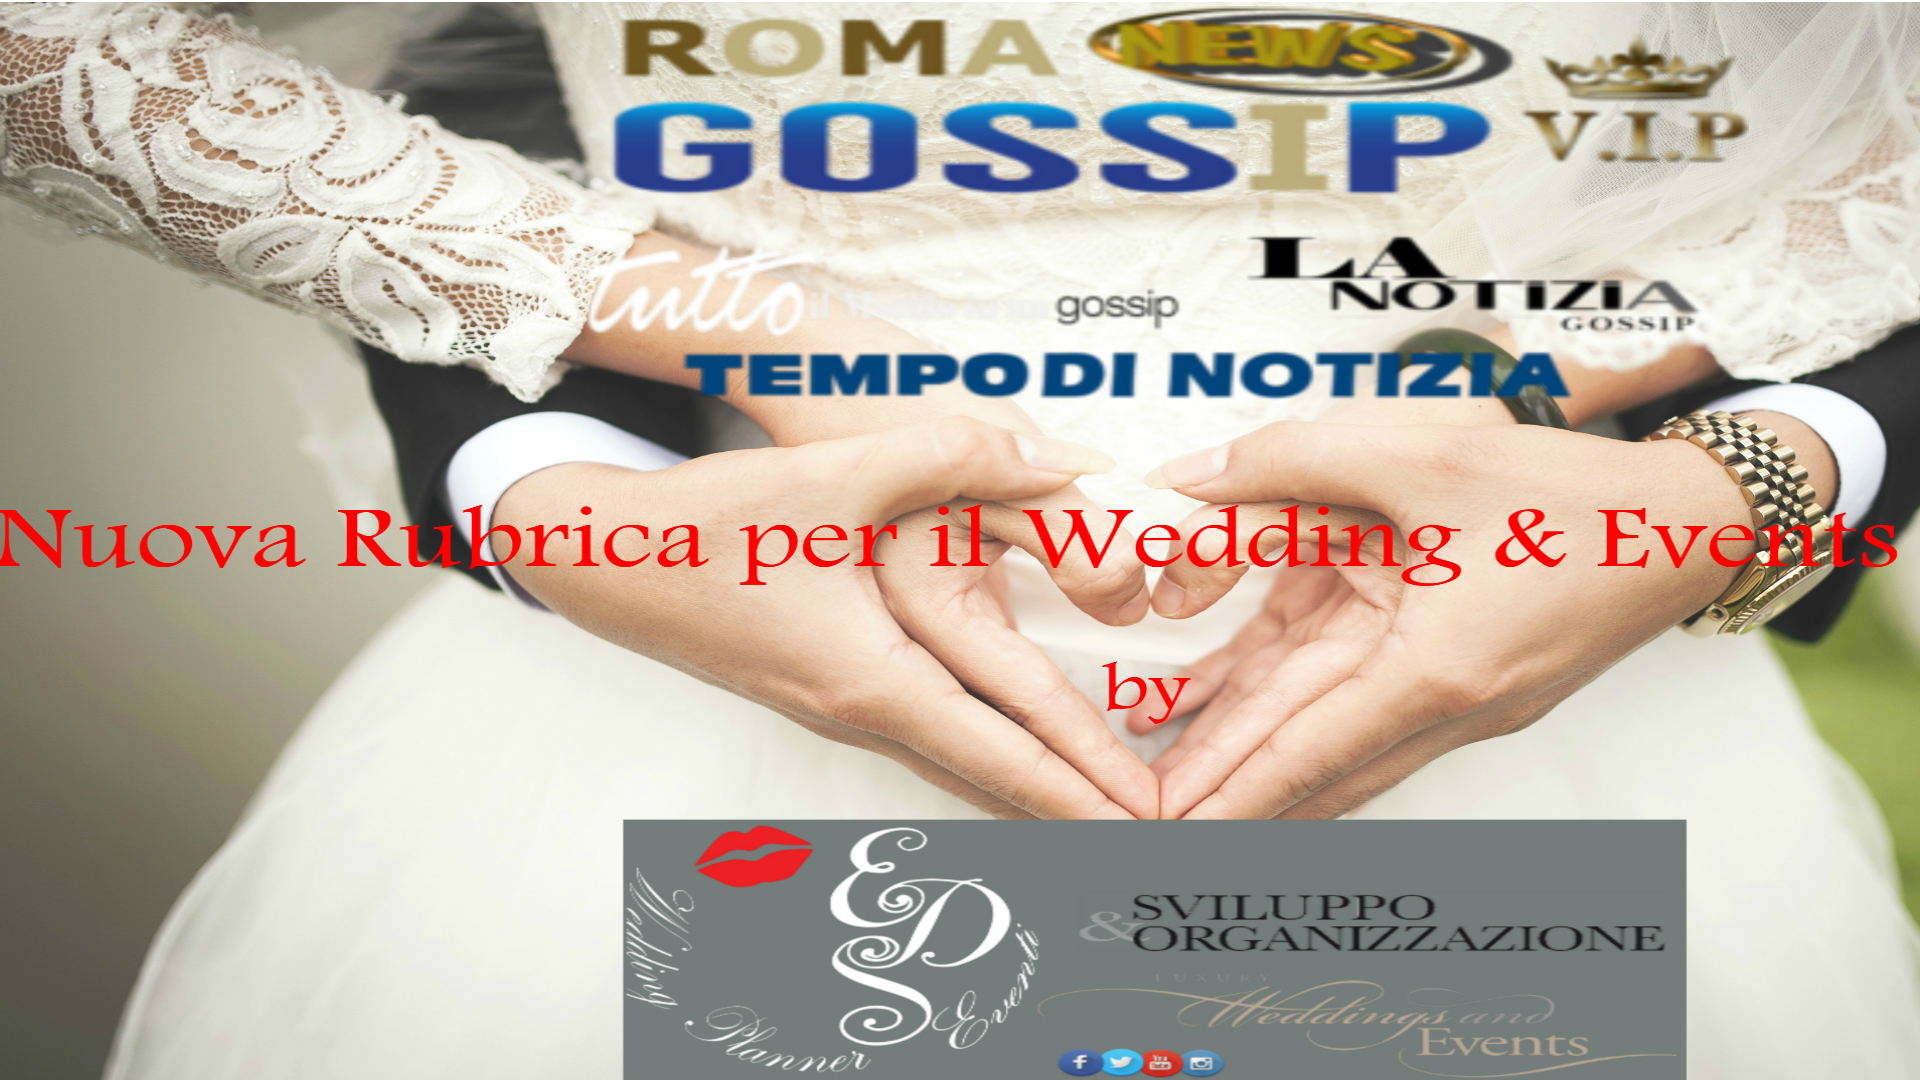 Eds WP Eventi Italian luxury Brand  di Erno Rossi , Denise Rossi & William Vittori a partire da Martedì 10 Luglio 2018 saranno su Roma News Gossi Vip con la loro rubrica “Wedding & Events“.